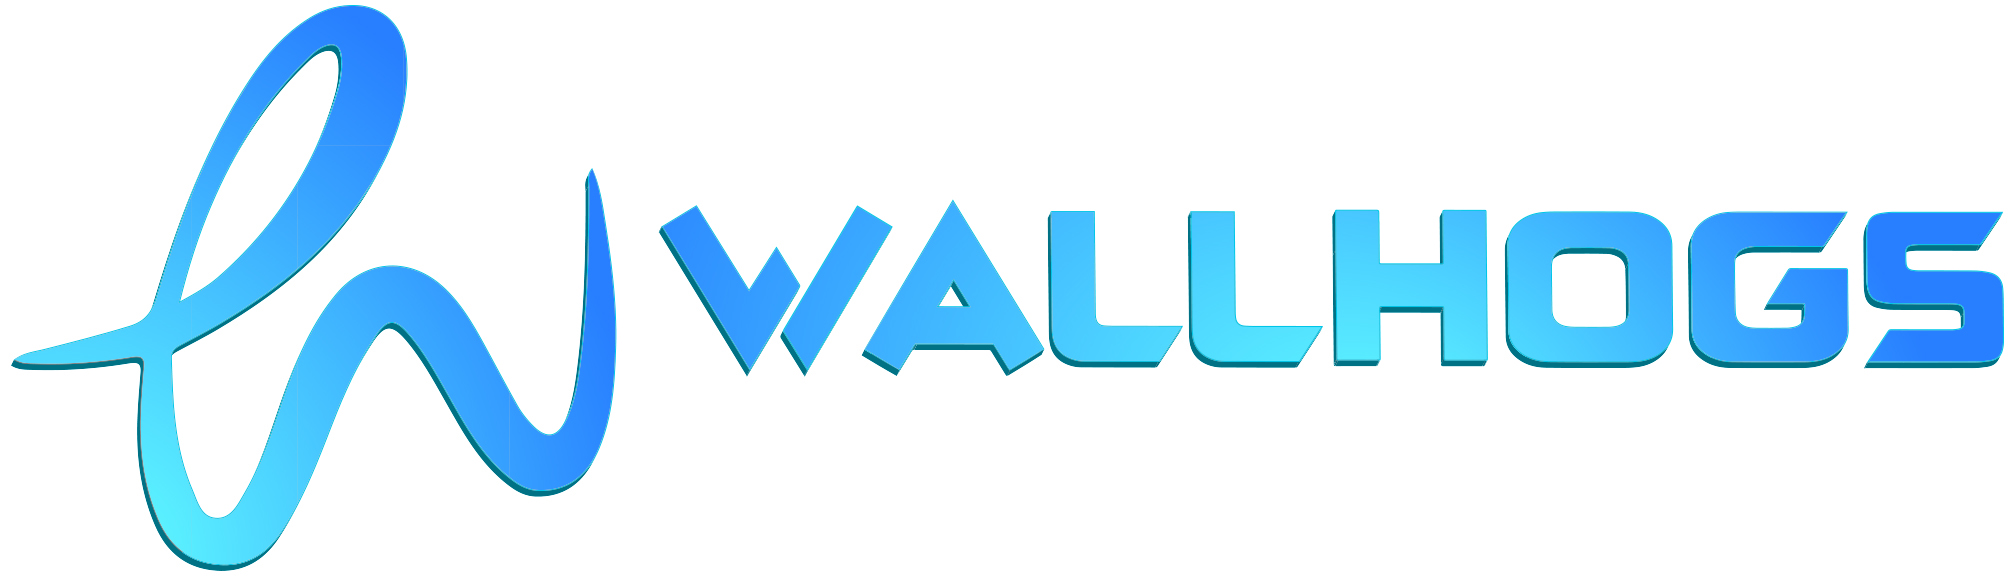 Wallhogs logo